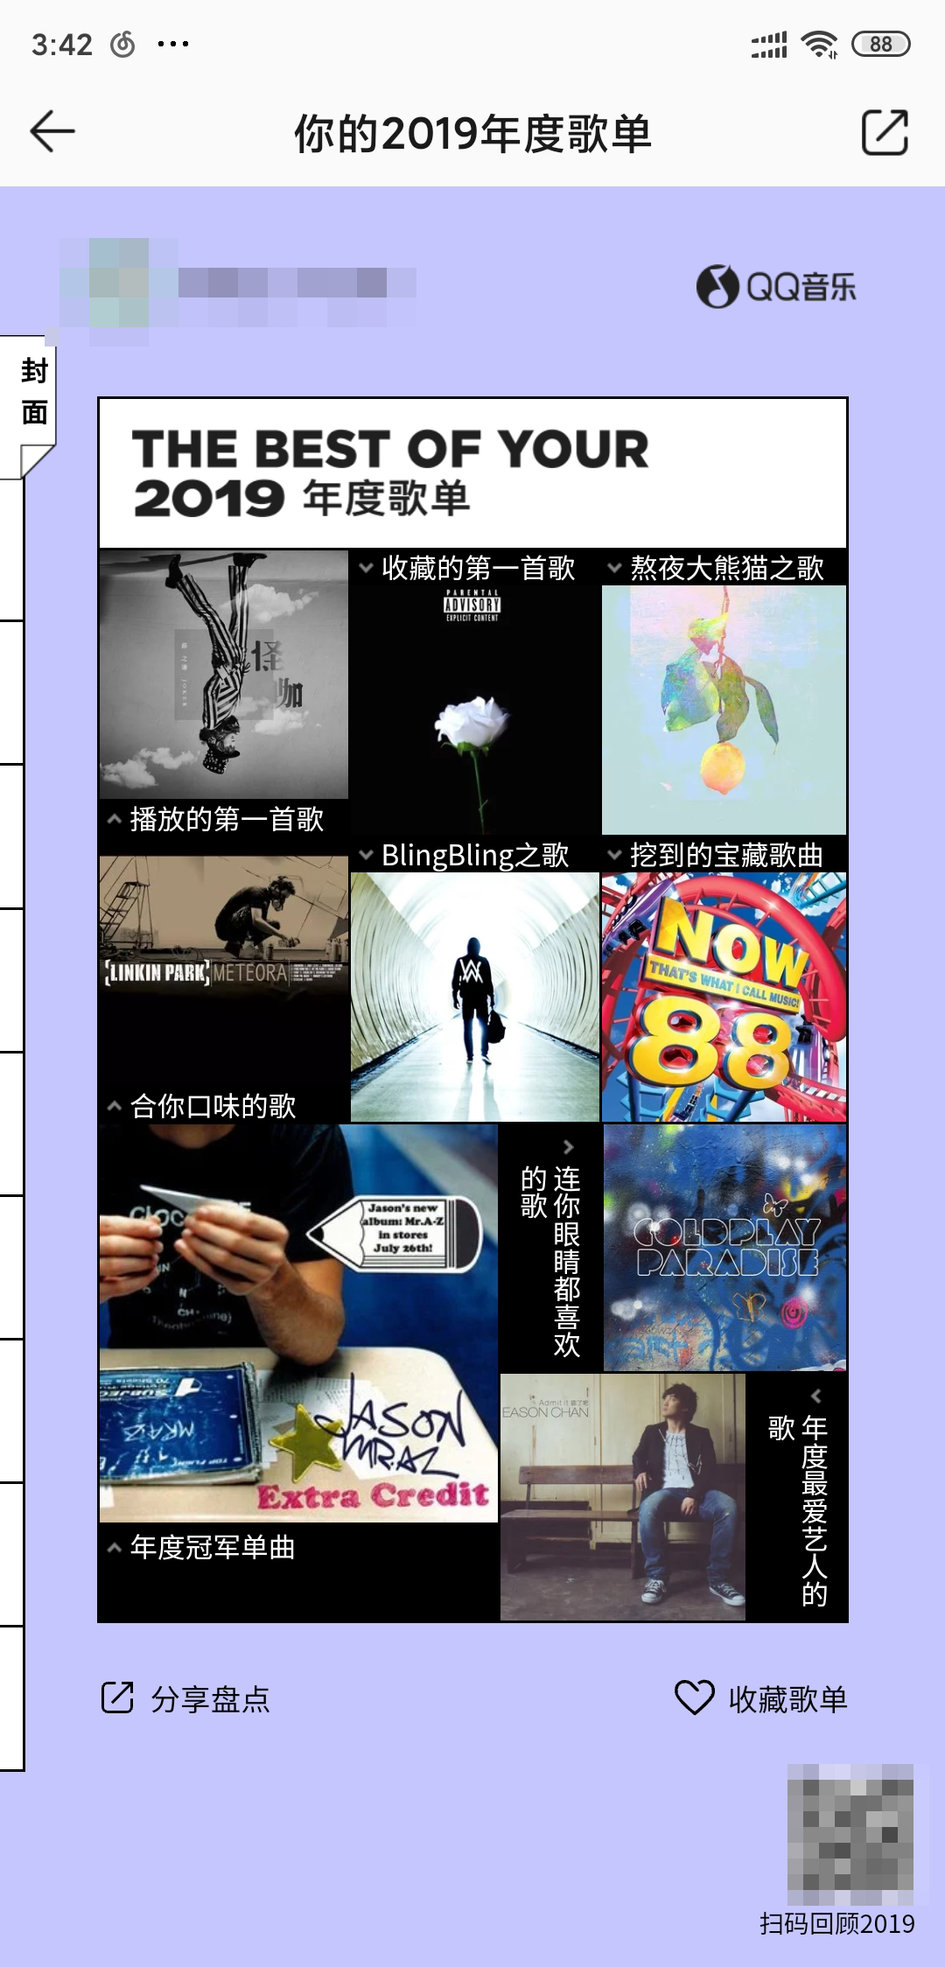 你今年听了哪些歌？QQ/网易云音乐发布年度听歌报告